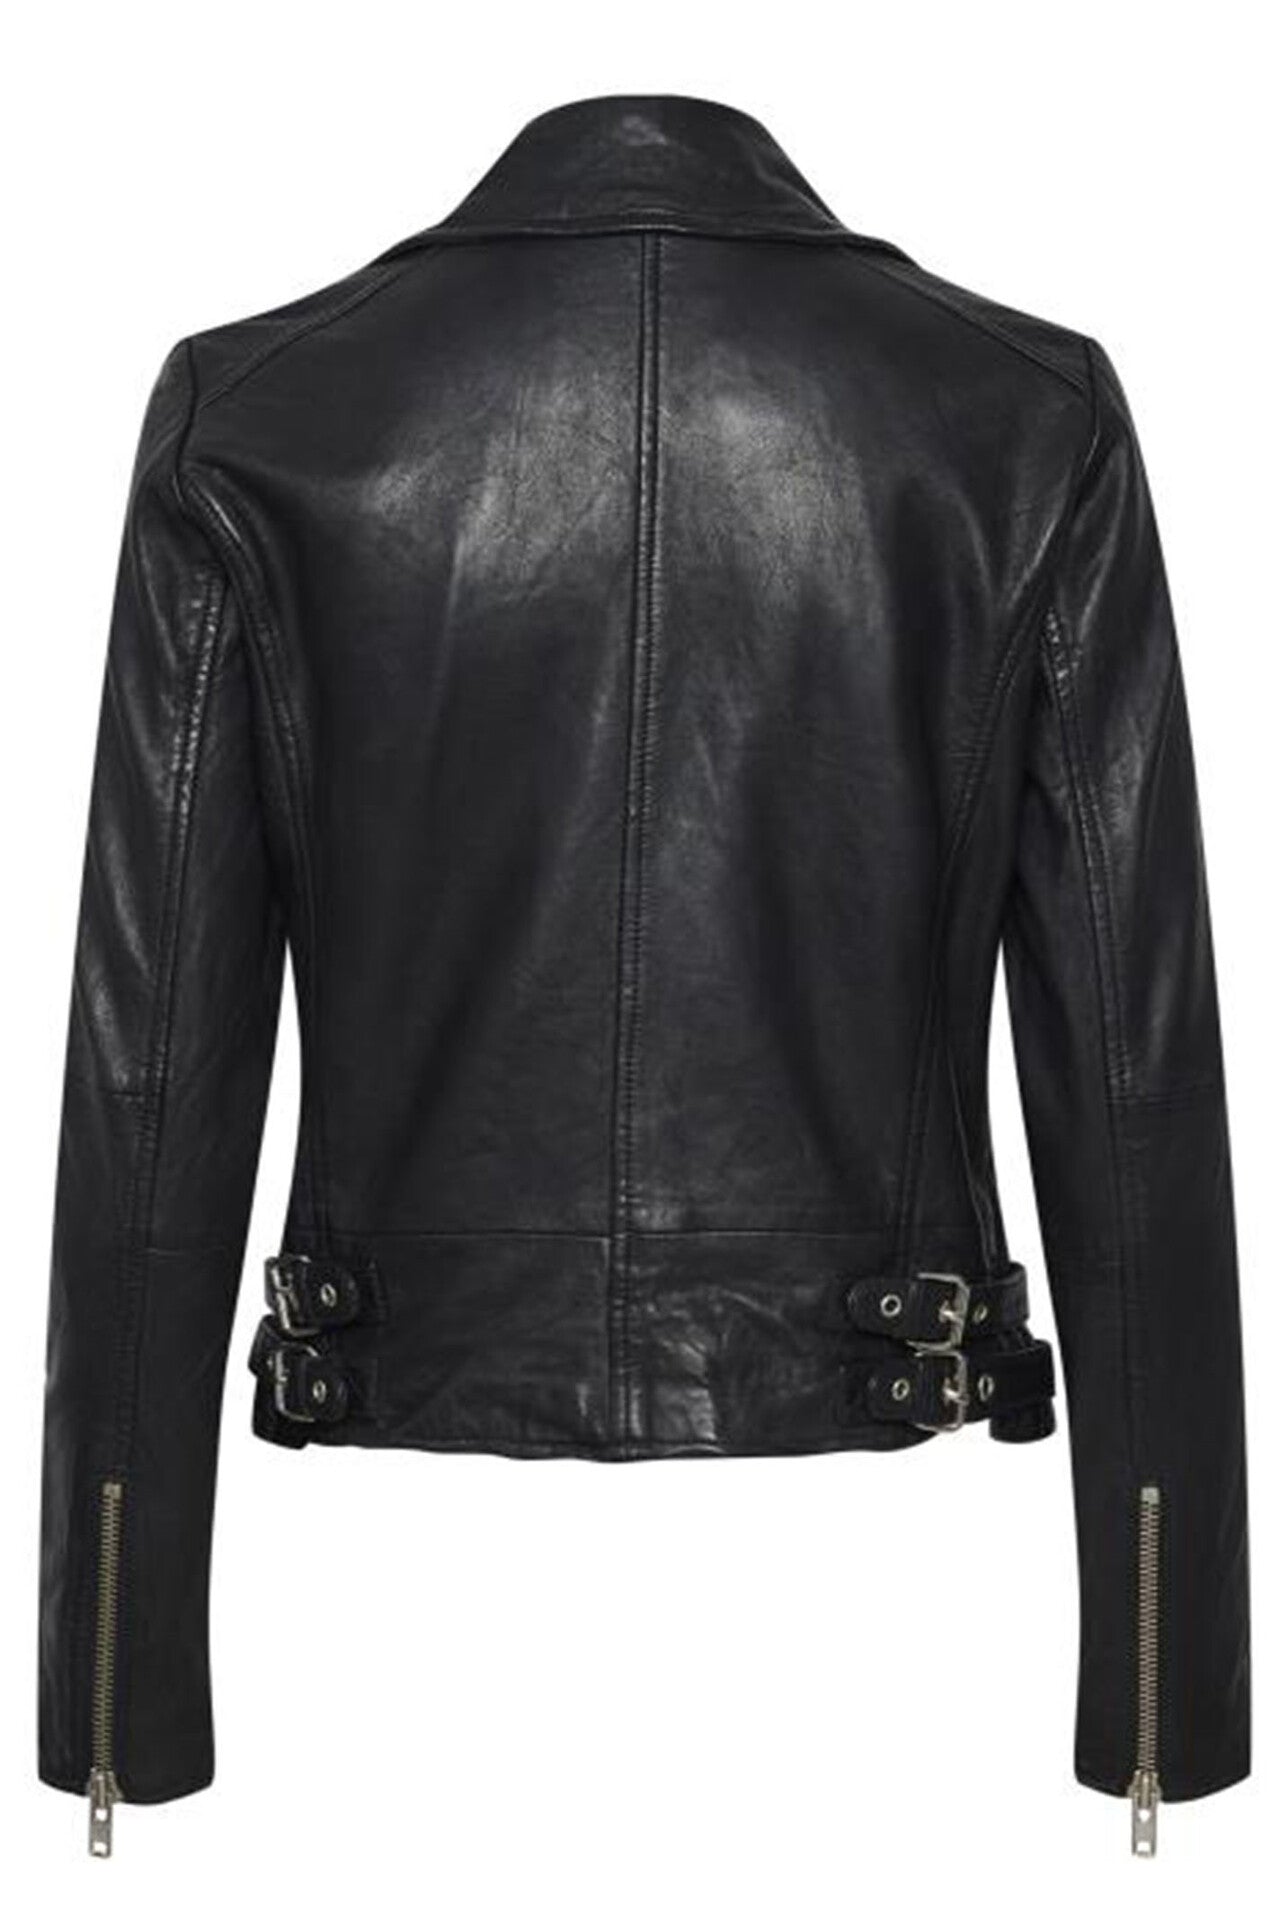 02 leather jacket